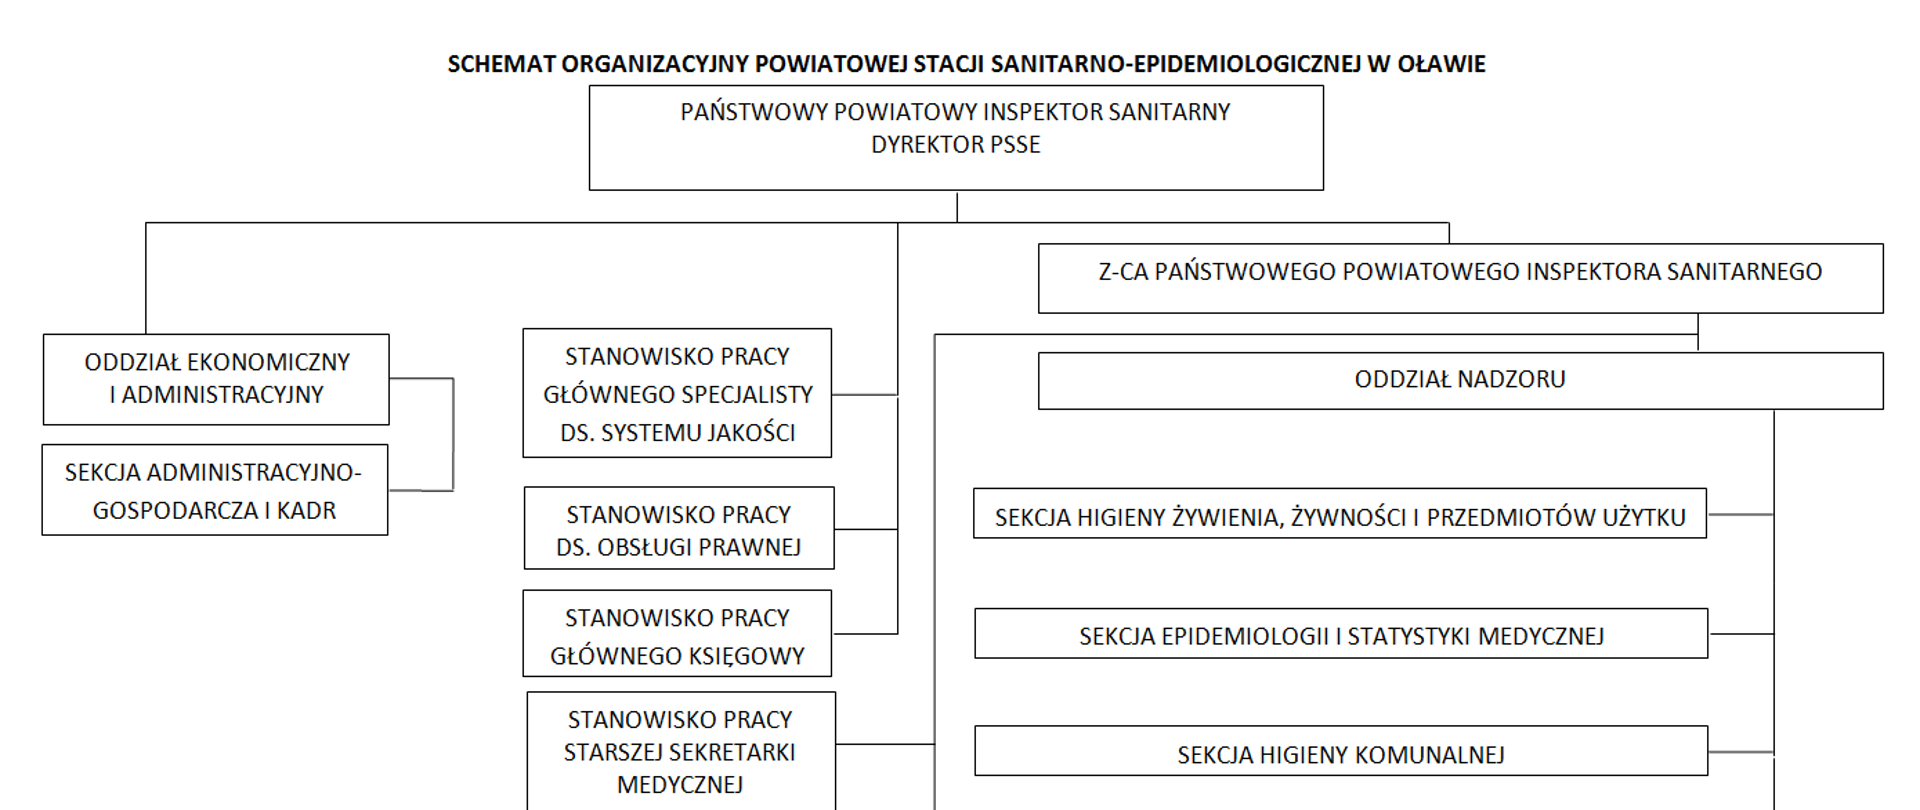 Schemat organizacyjny stacji PSSE Oława. Dyrekcja, następnie trzy piony, administracji, nadzoru pion wspierający pracę